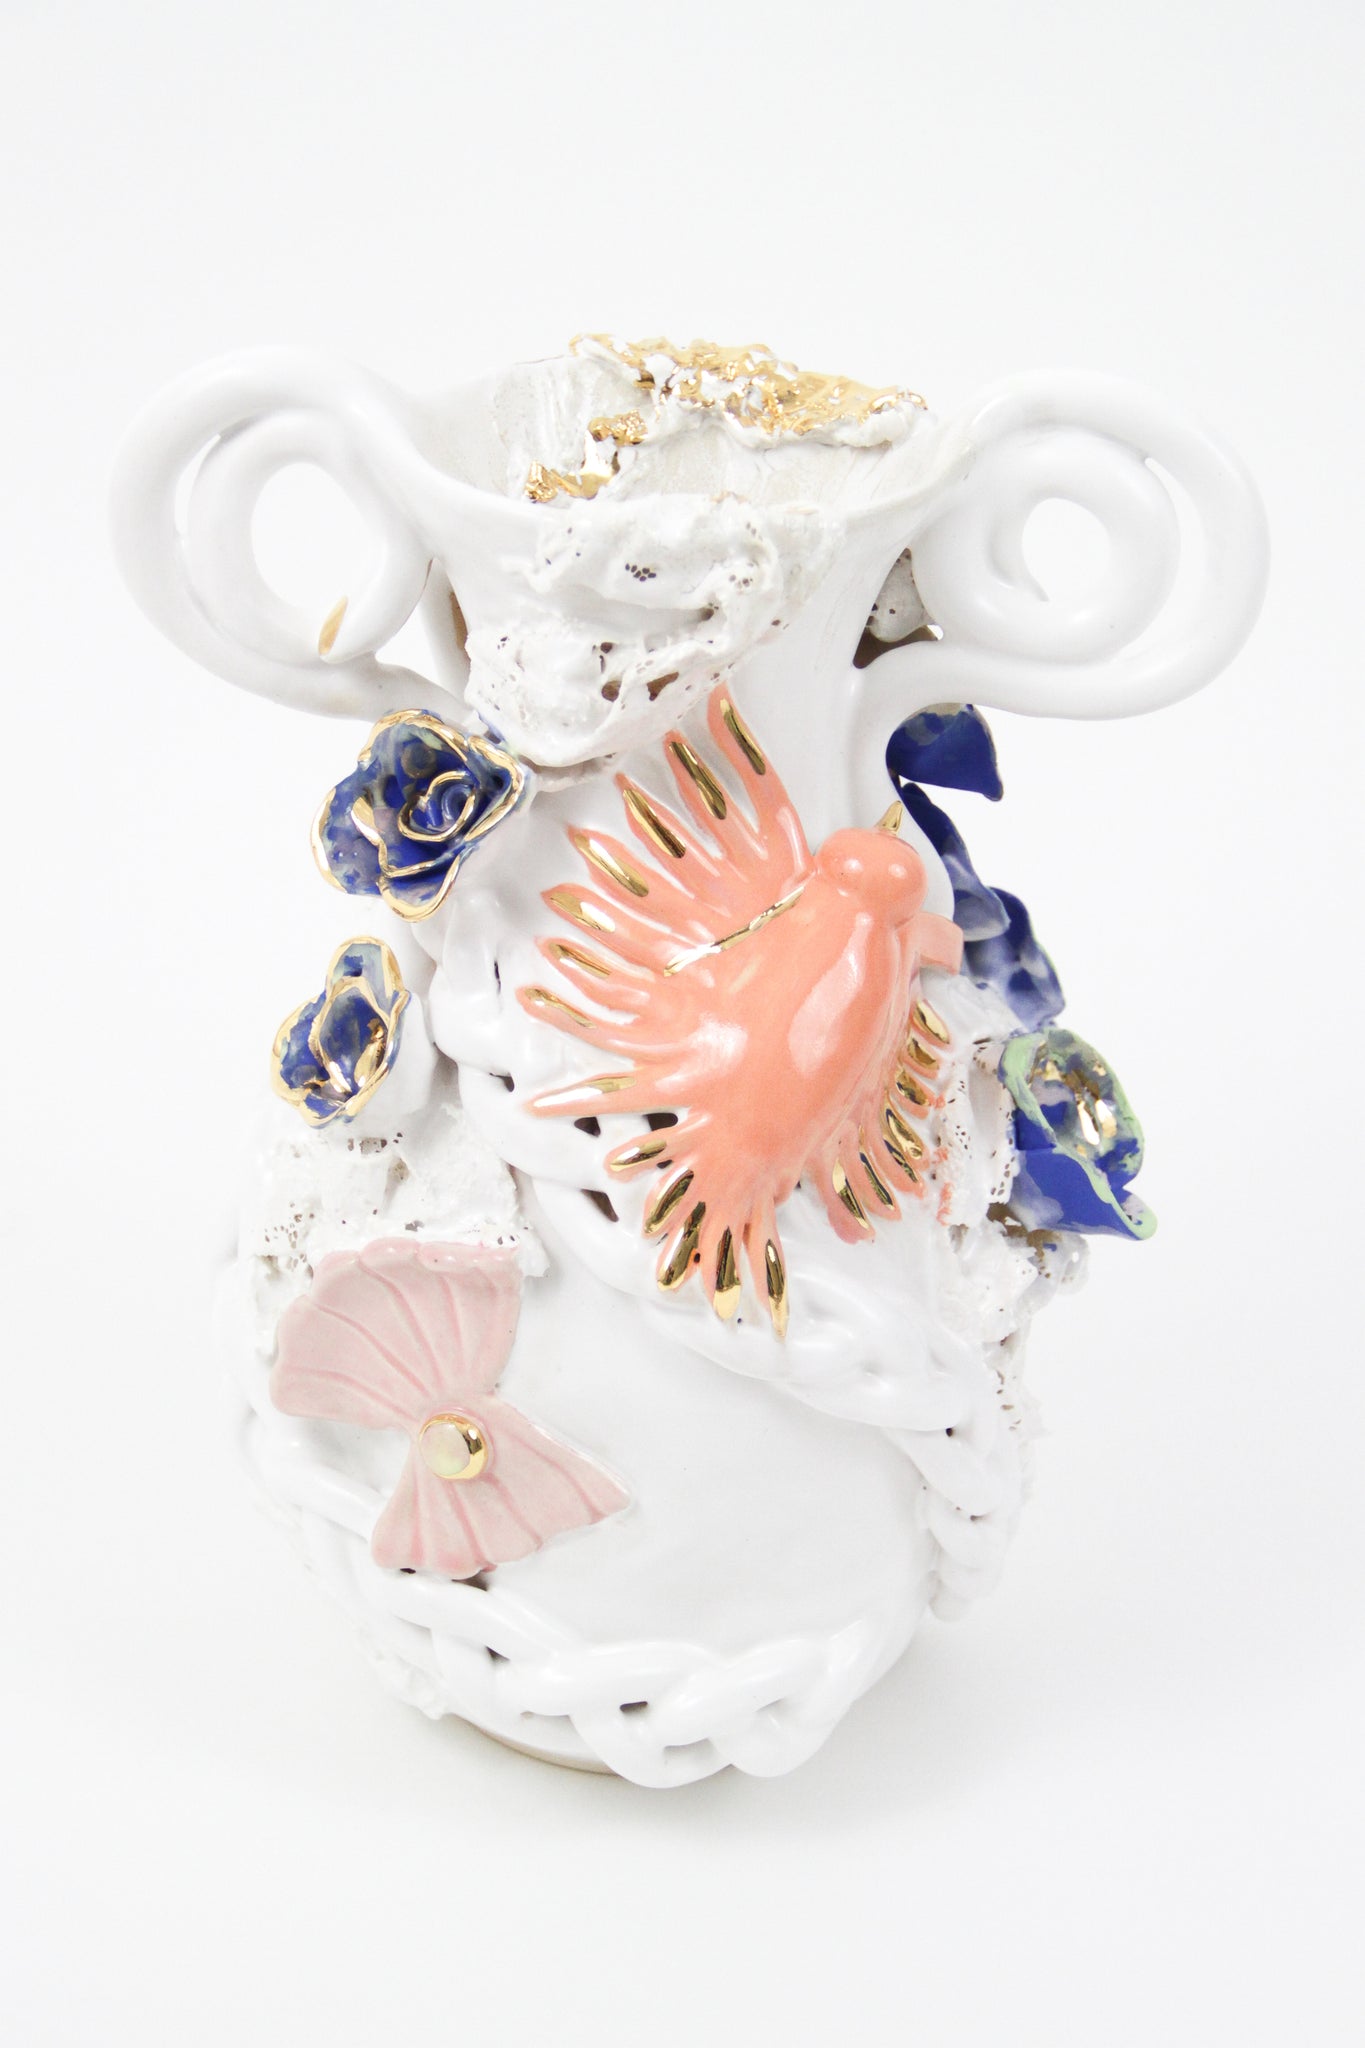 Jen Dwyer, "Aphrodite's Vase"